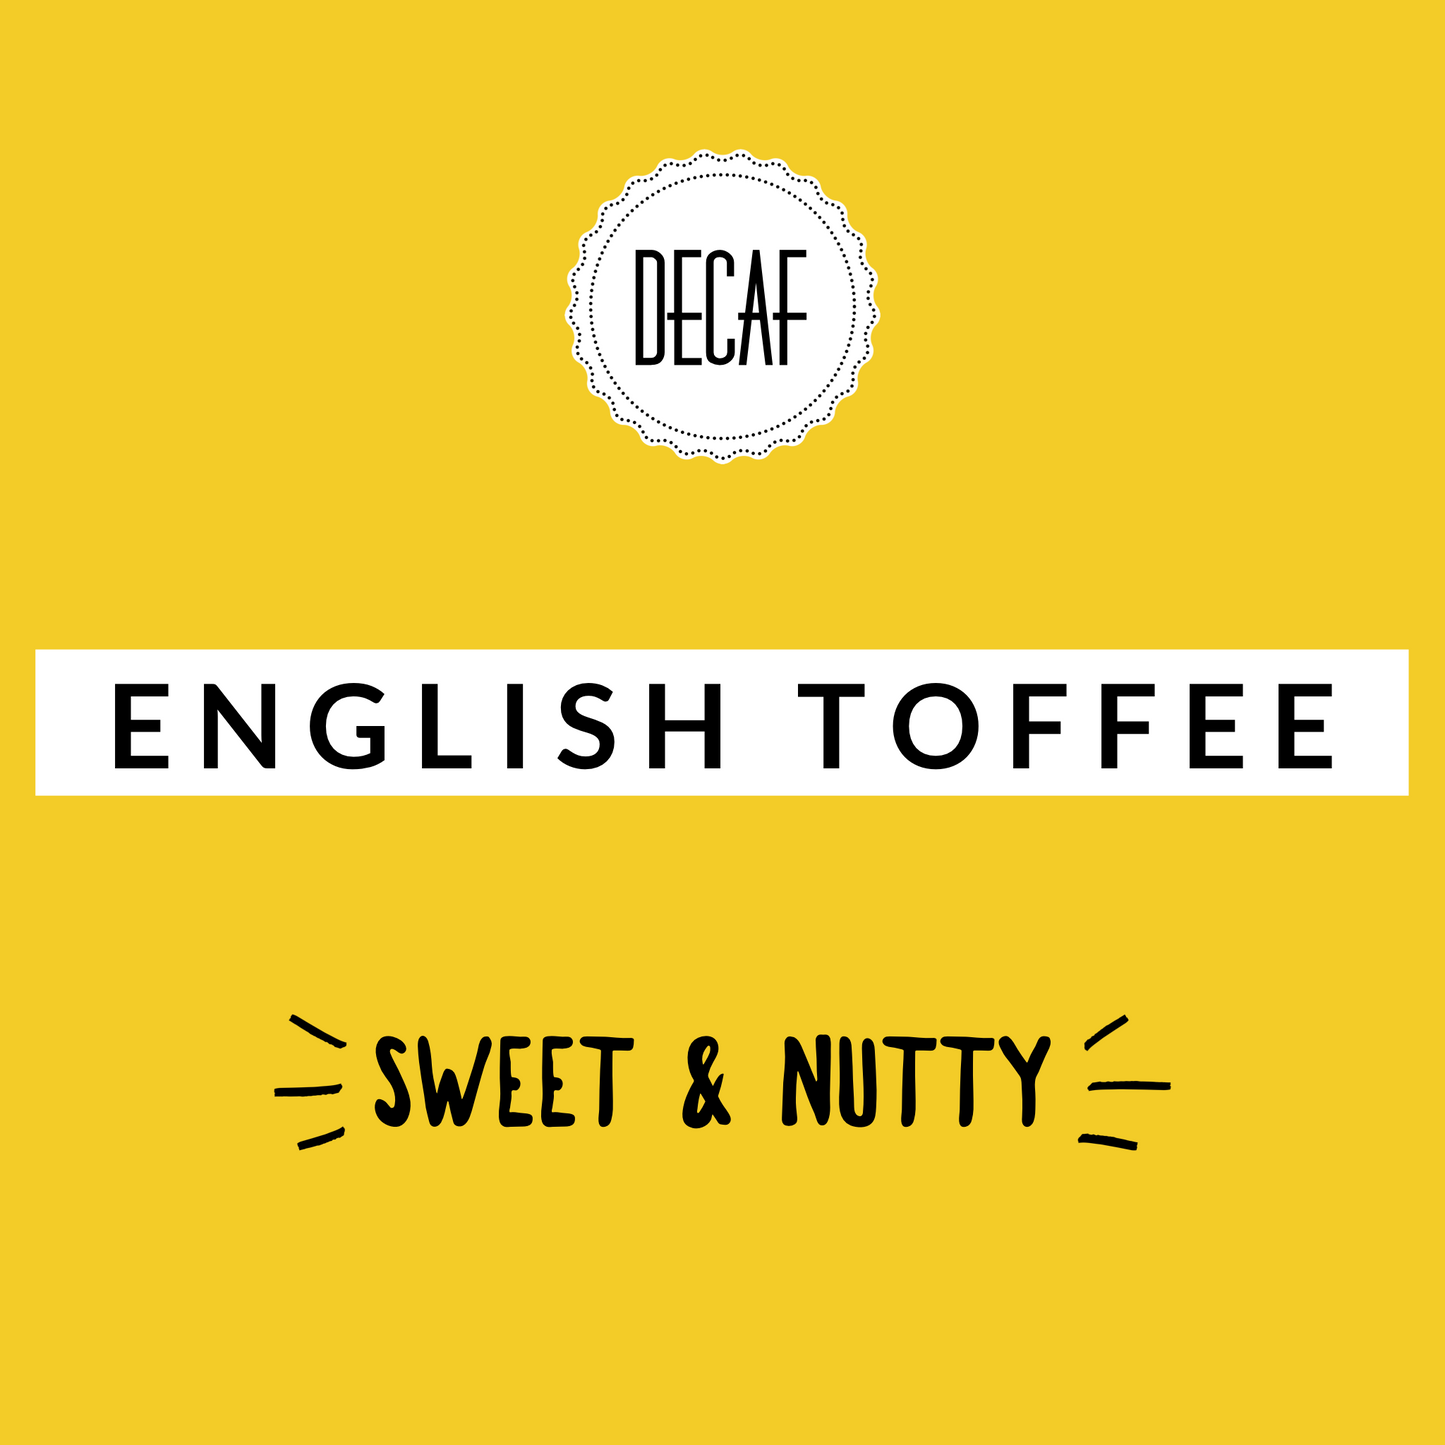 English Toffee Decaf